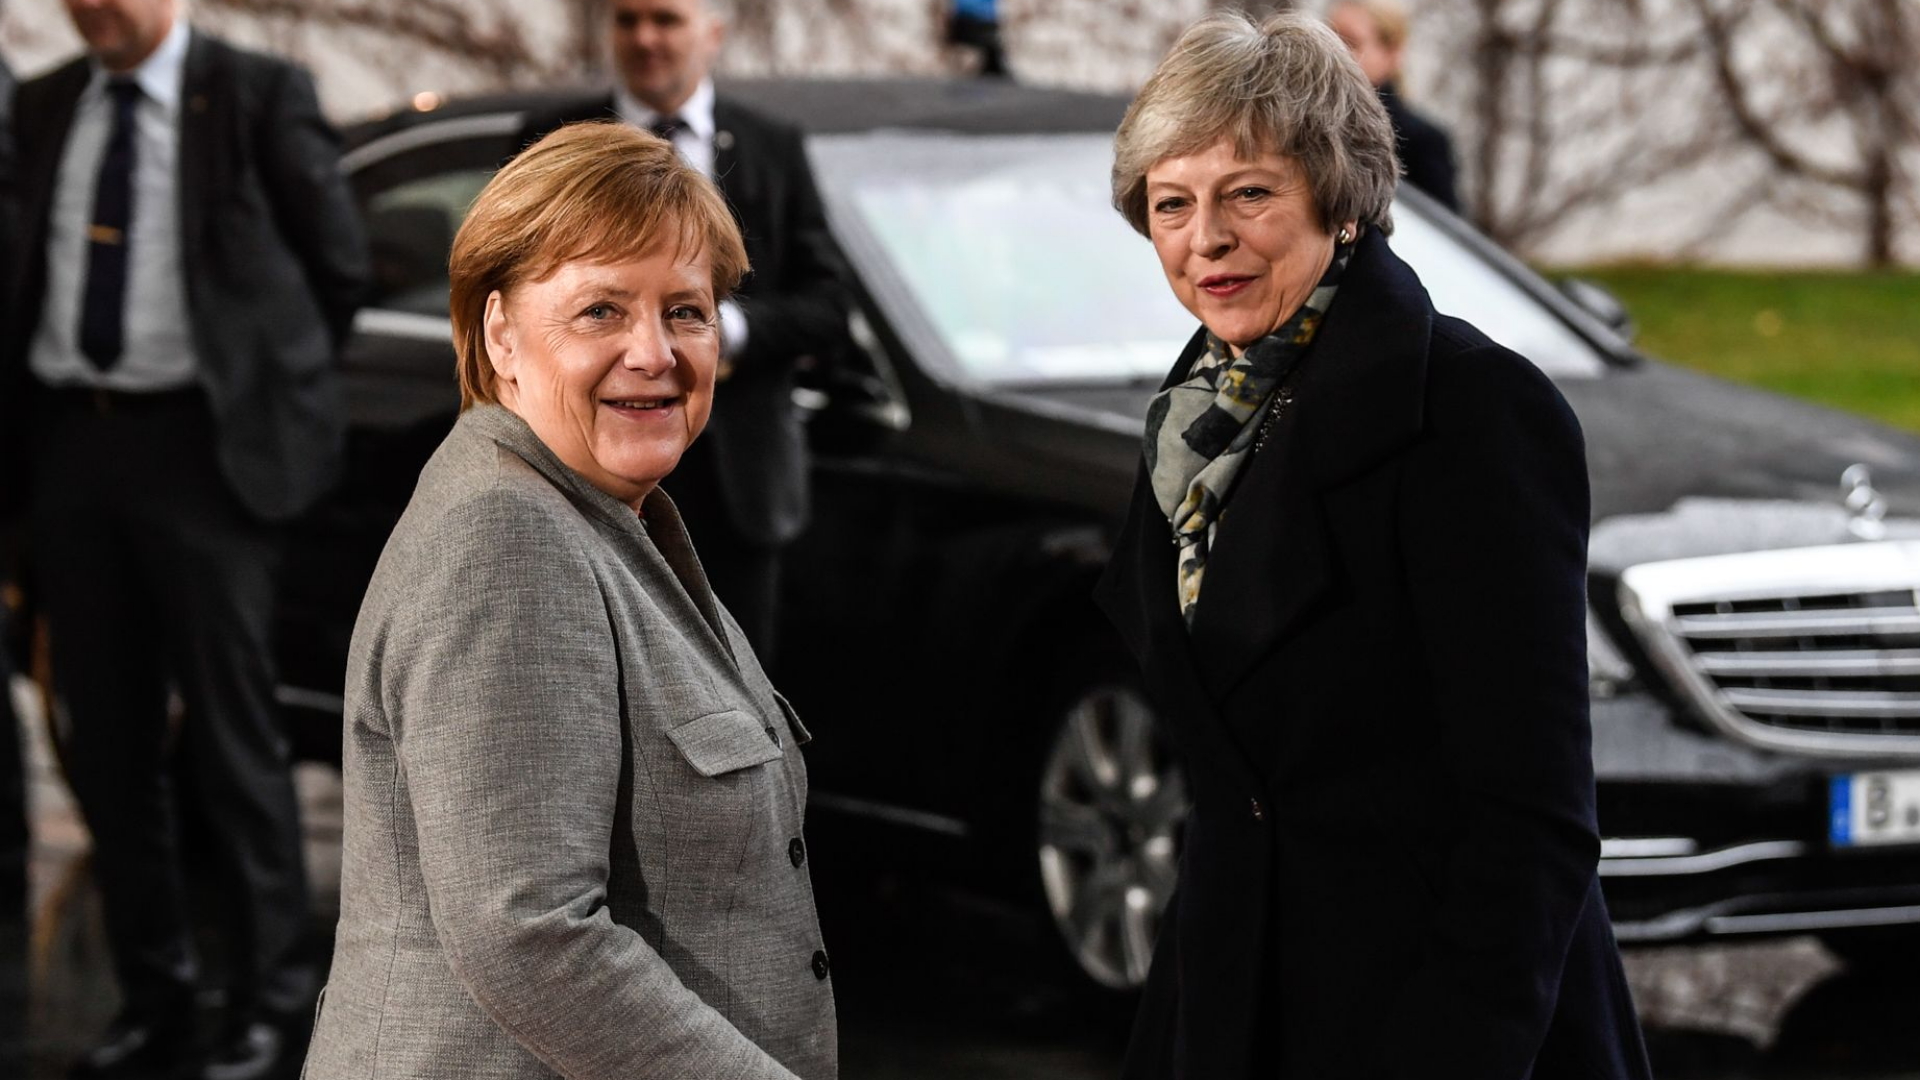 Kanzlerin Angela Merkel nach dem Gespräch mit Großbritanniens Premierministerin May | FILIP SINGER/EPA-EFE/REX